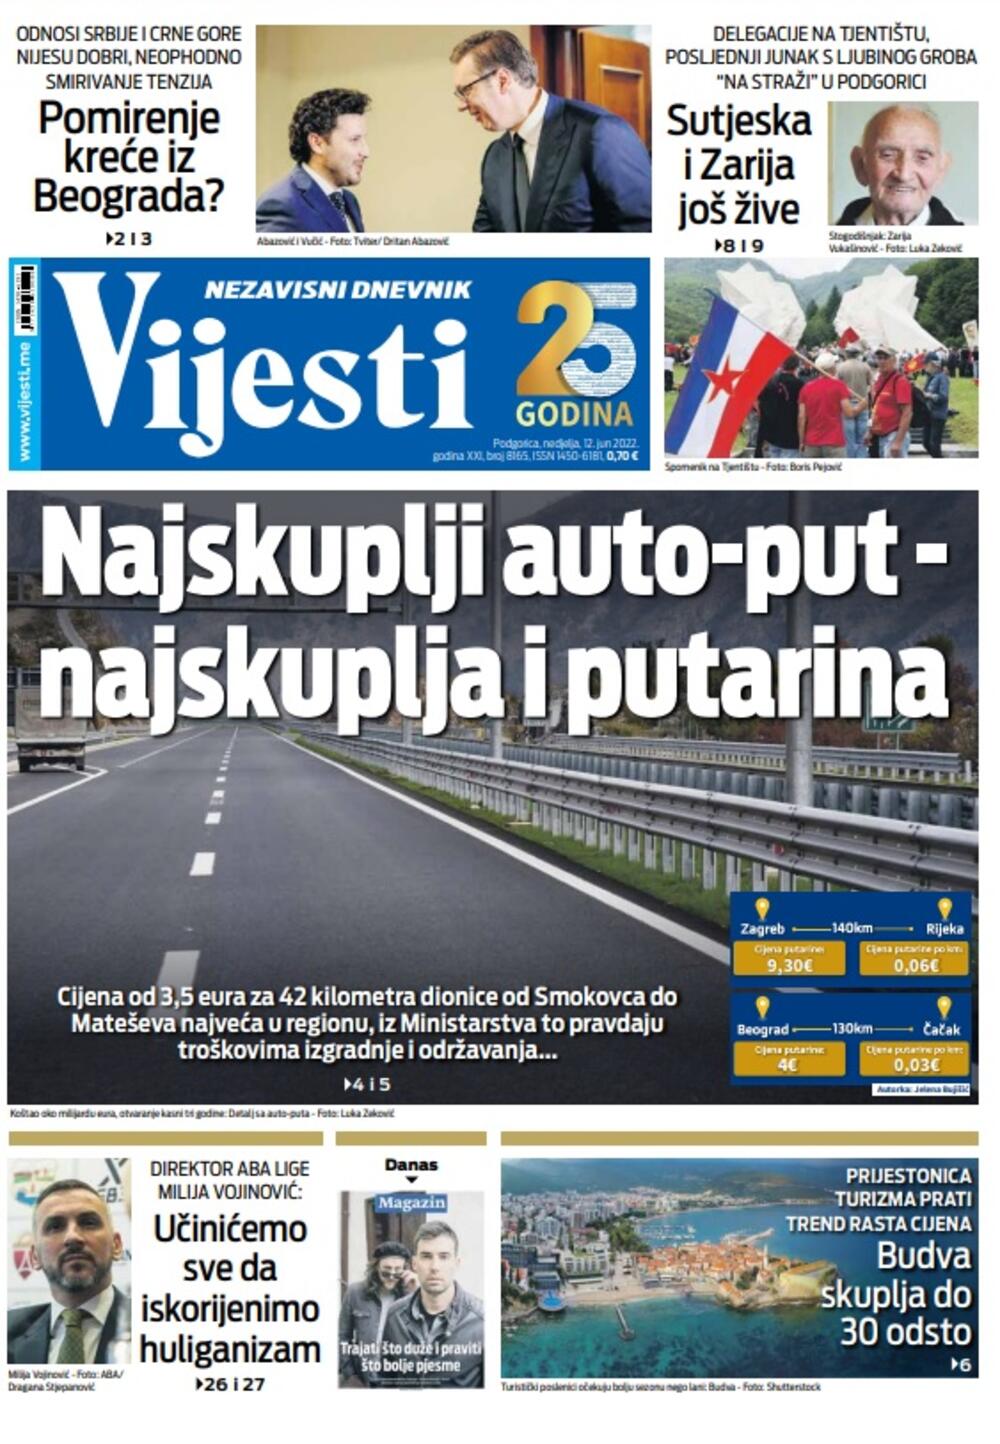 Naslovna strana "Vijesti" za nedjelju 12. jun 2022., Foto: Vijesti